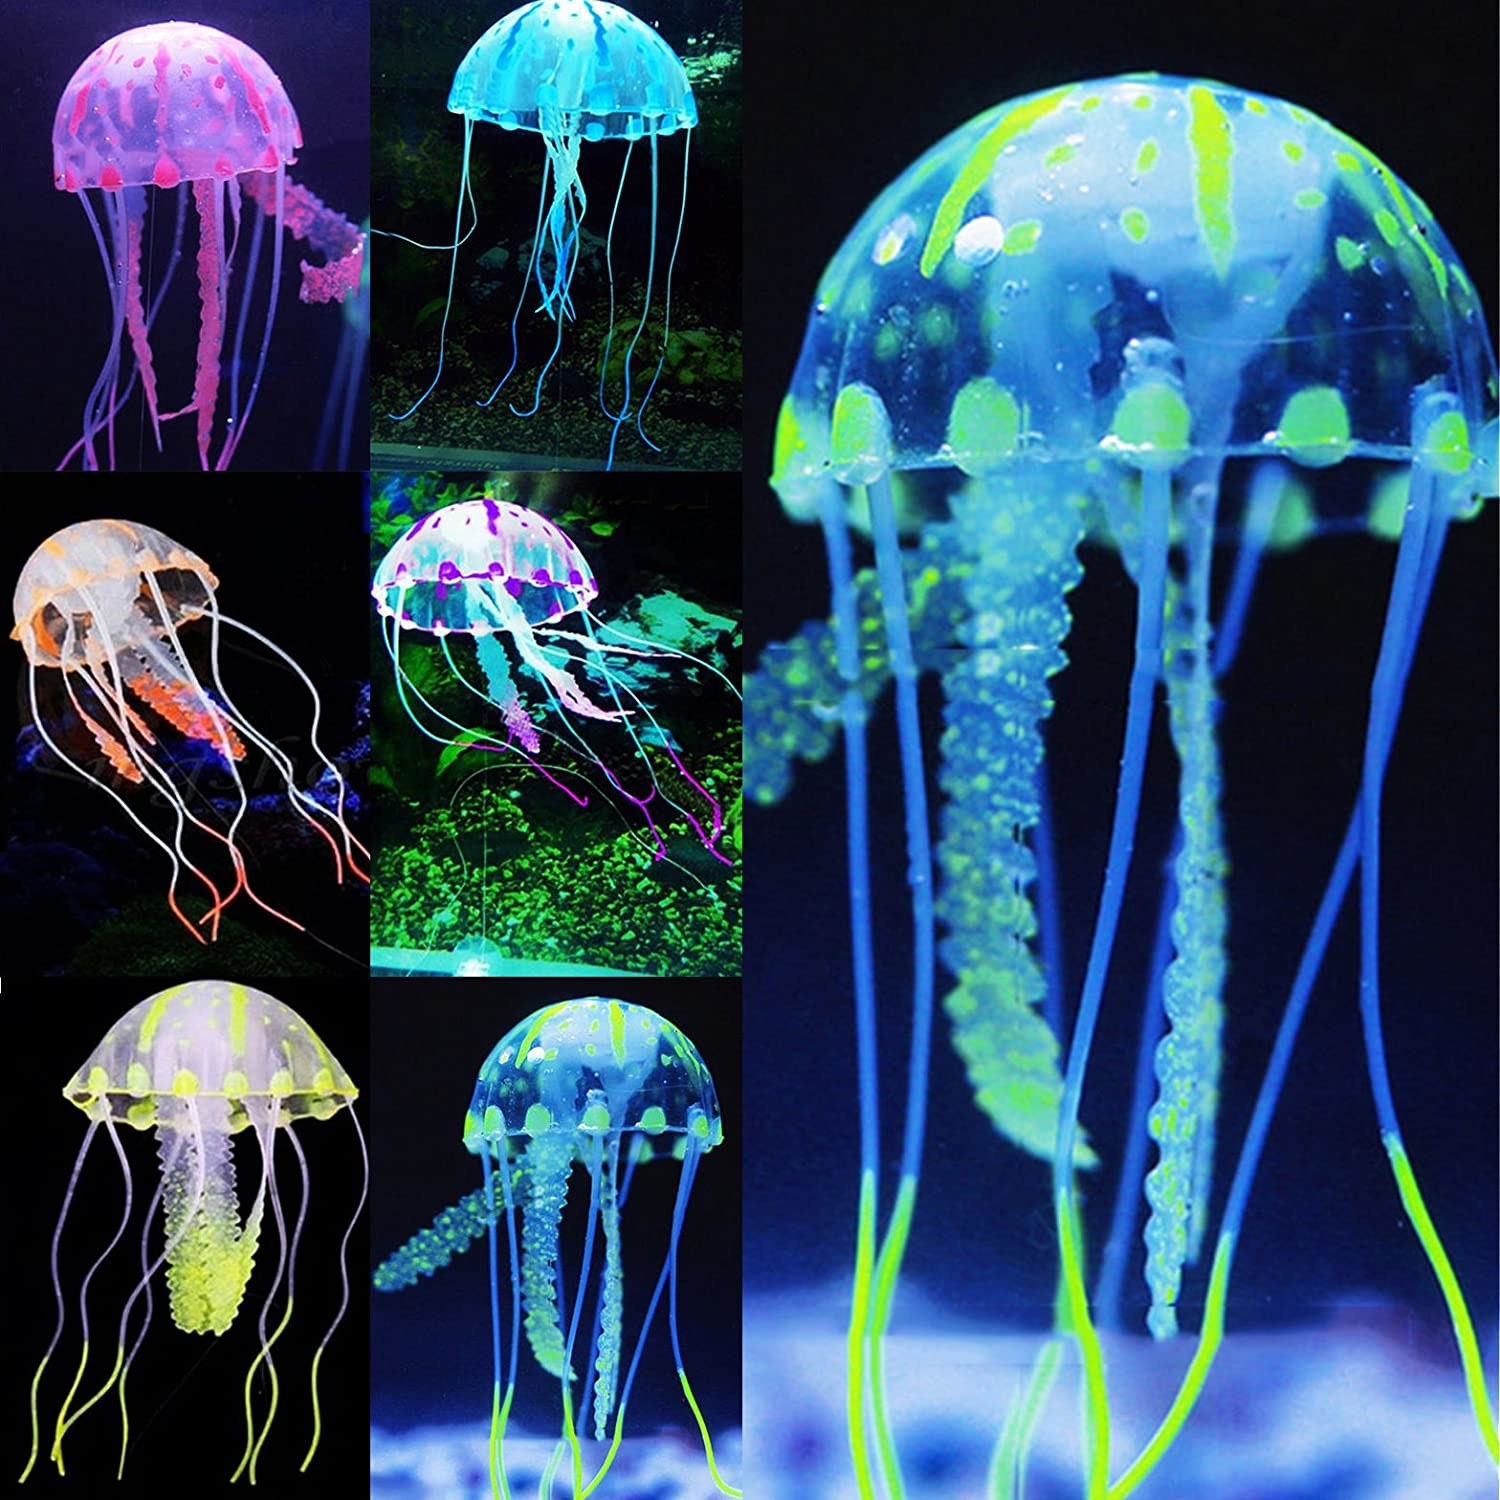 The neon jellyfish 